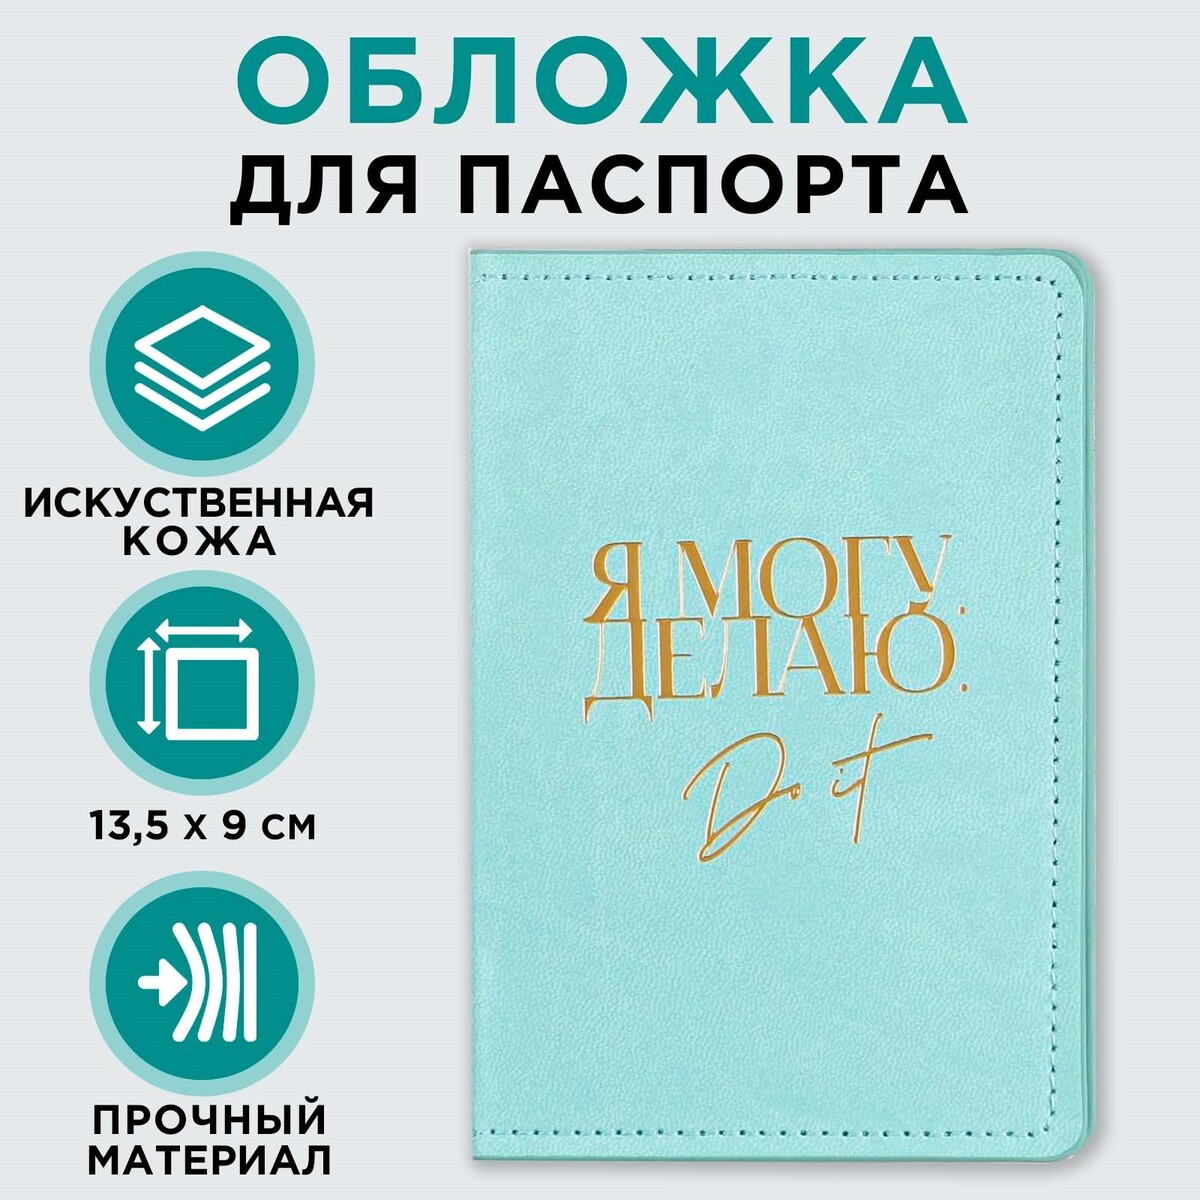 Обложка для паспорта обложка для паспорта бирюзовый